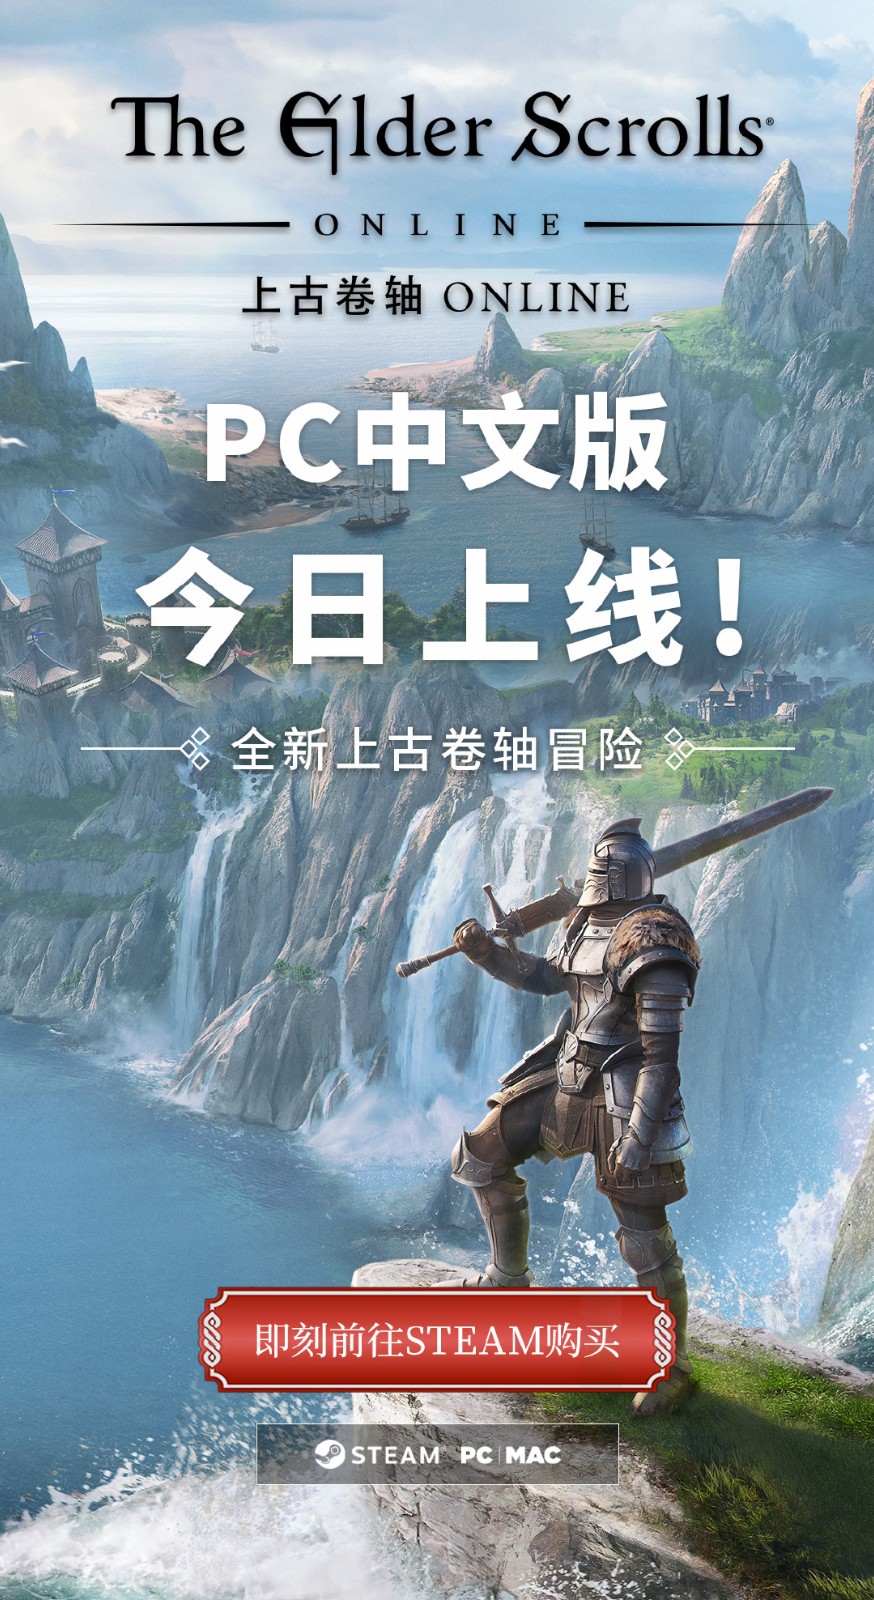 《上古卷轴OL》现已加入简体中文 可加入2100万玩家行列